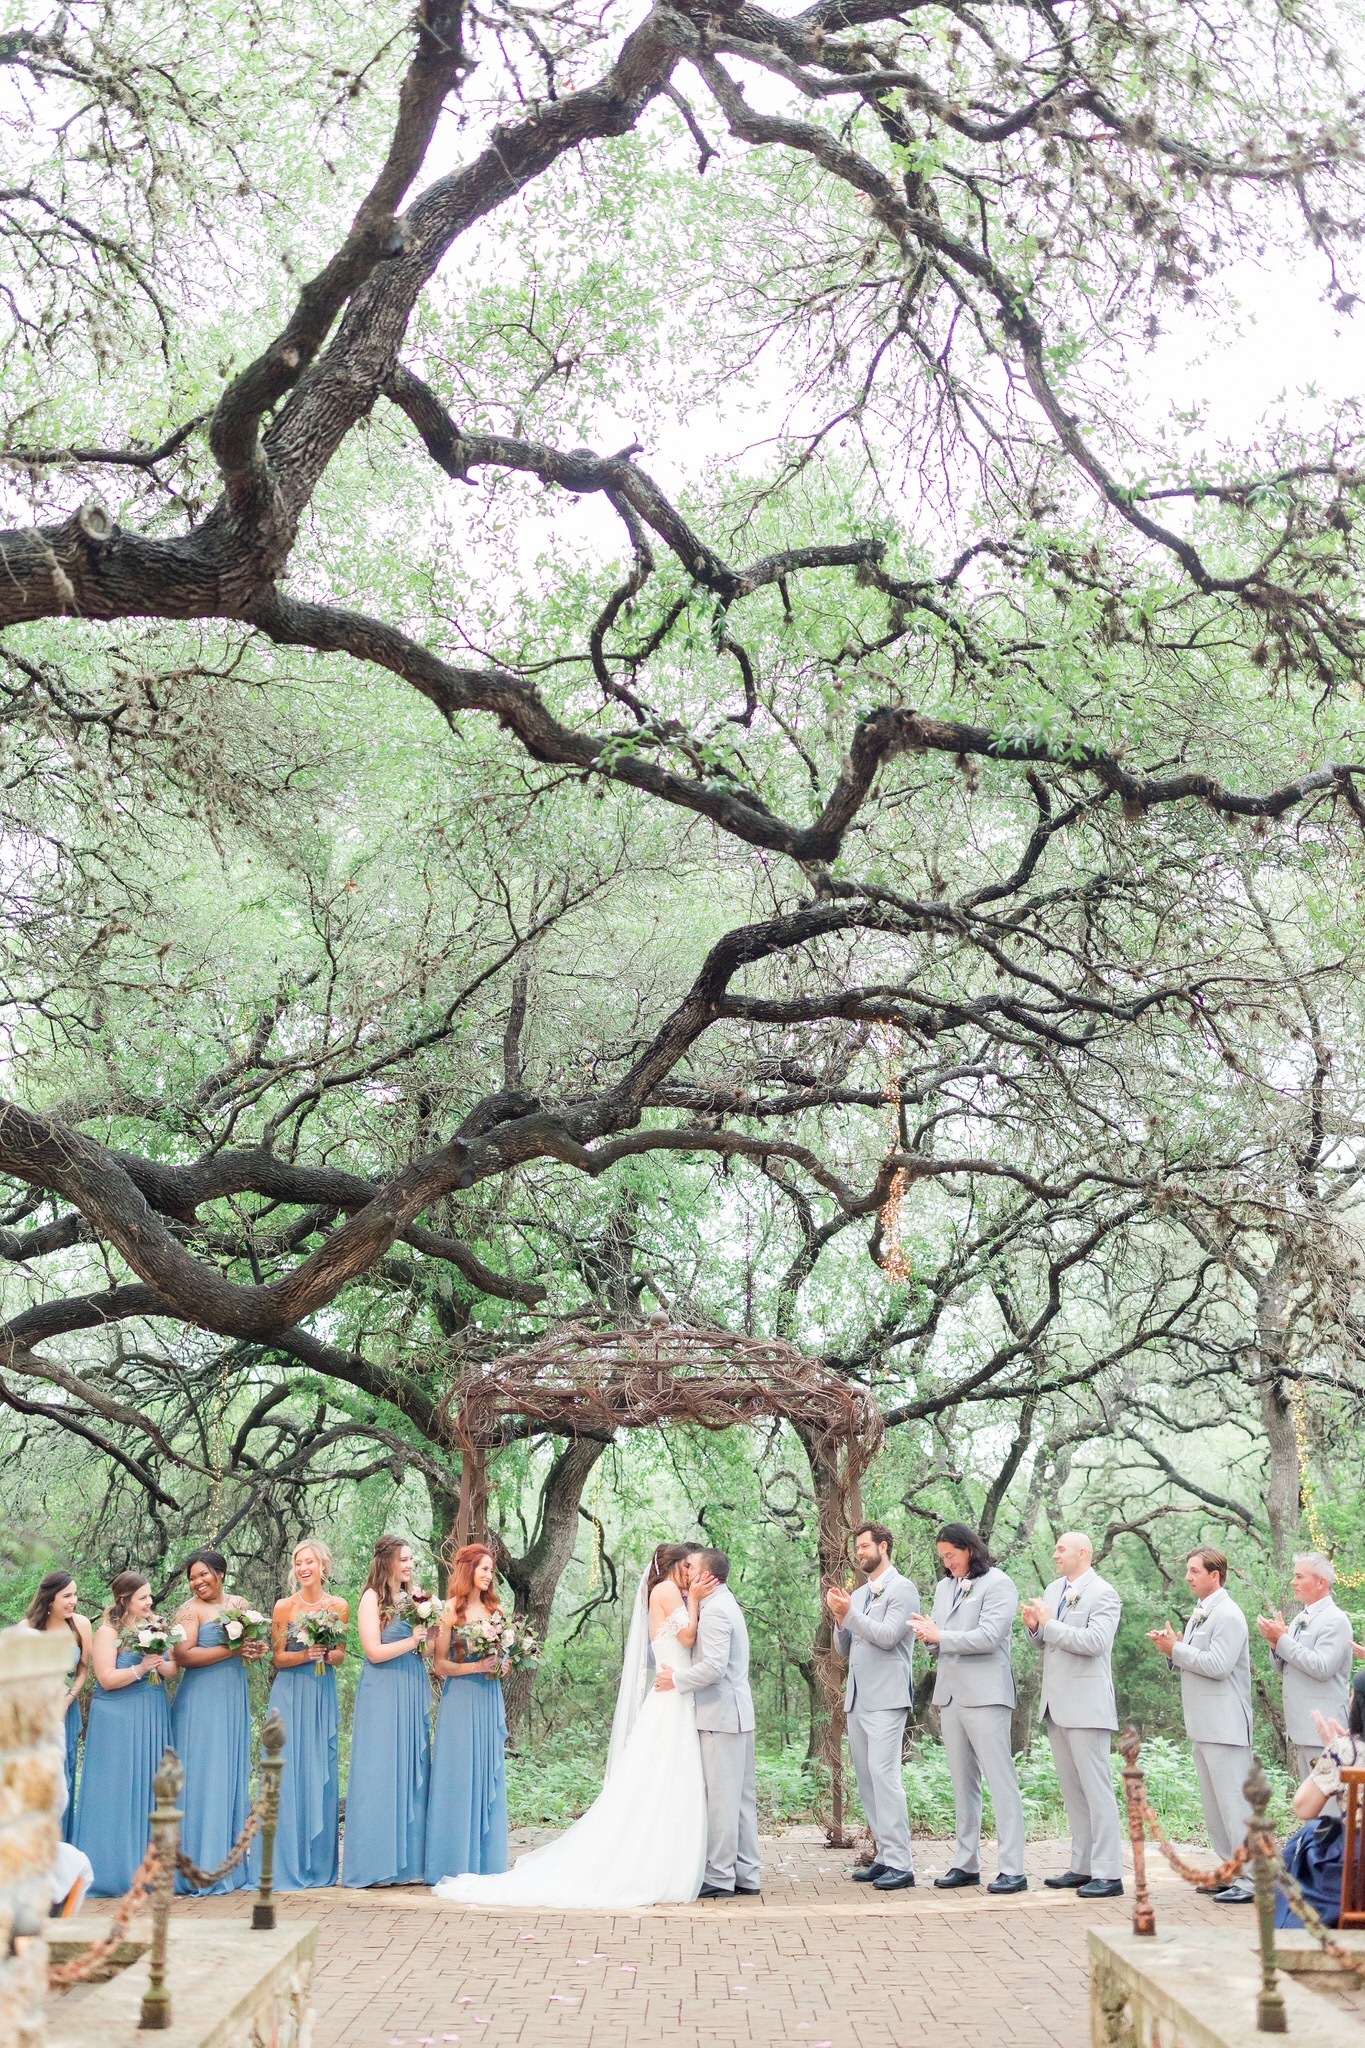 Wedding at Camp Lucy in Dripping Springs, TX by Dawn Elizabeth Studios, San Antonio Wedding Photographer